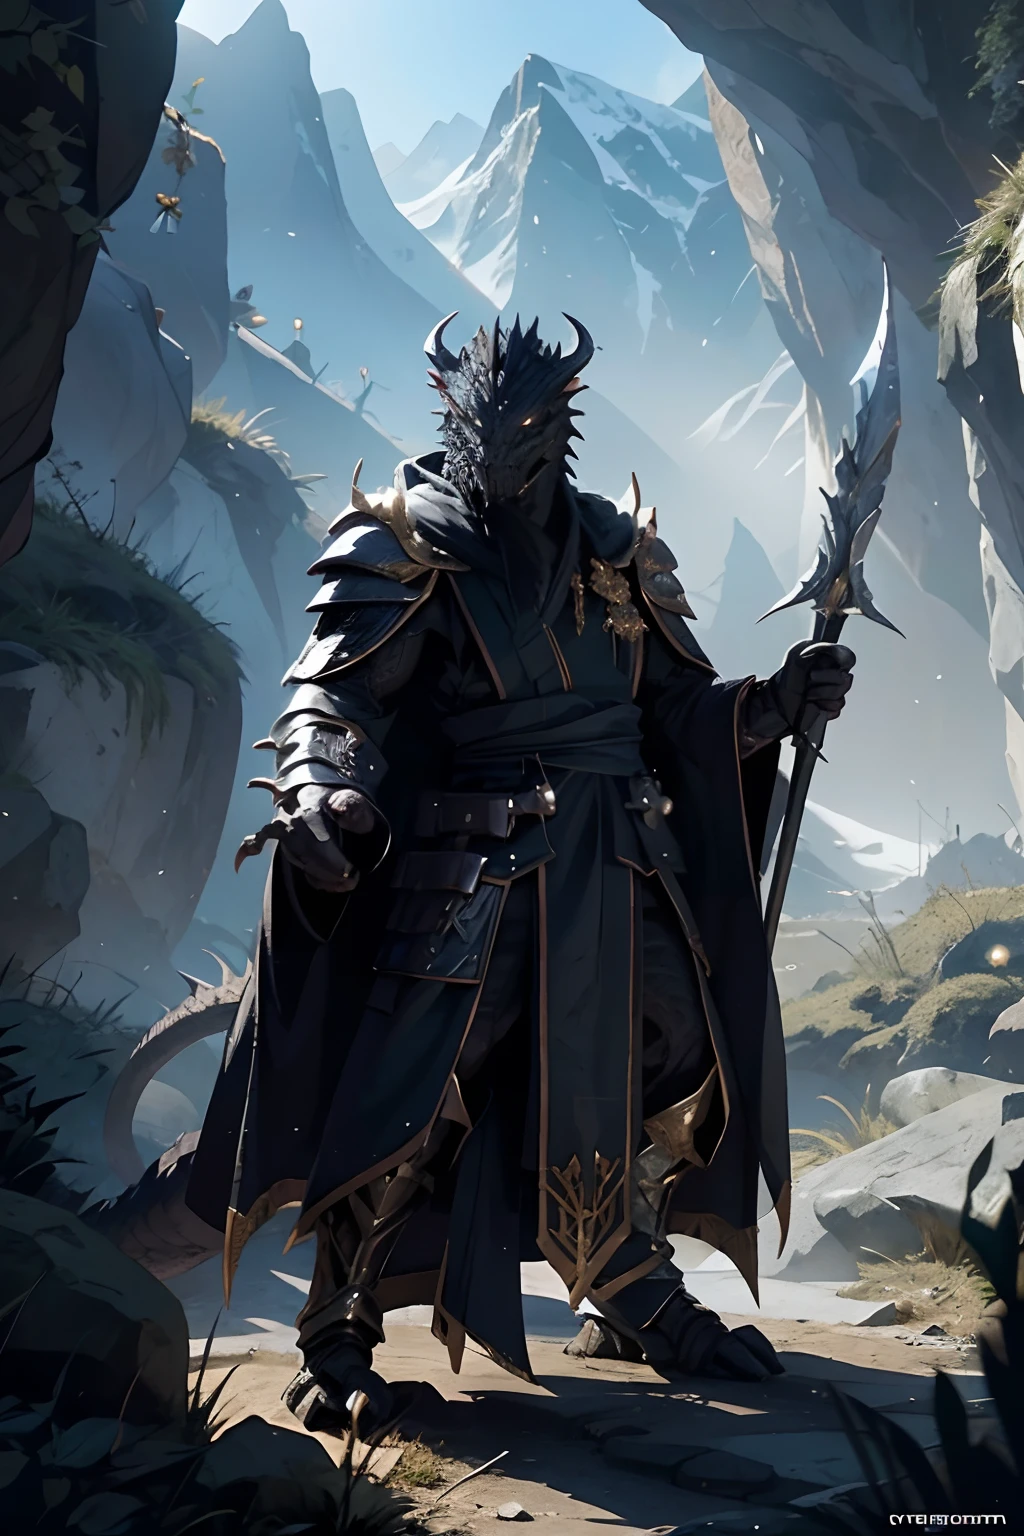 [preto] draconato, em um vale, usa um longo manto，armadura leve，adagas，Bastões longos，Combat posture，dnd